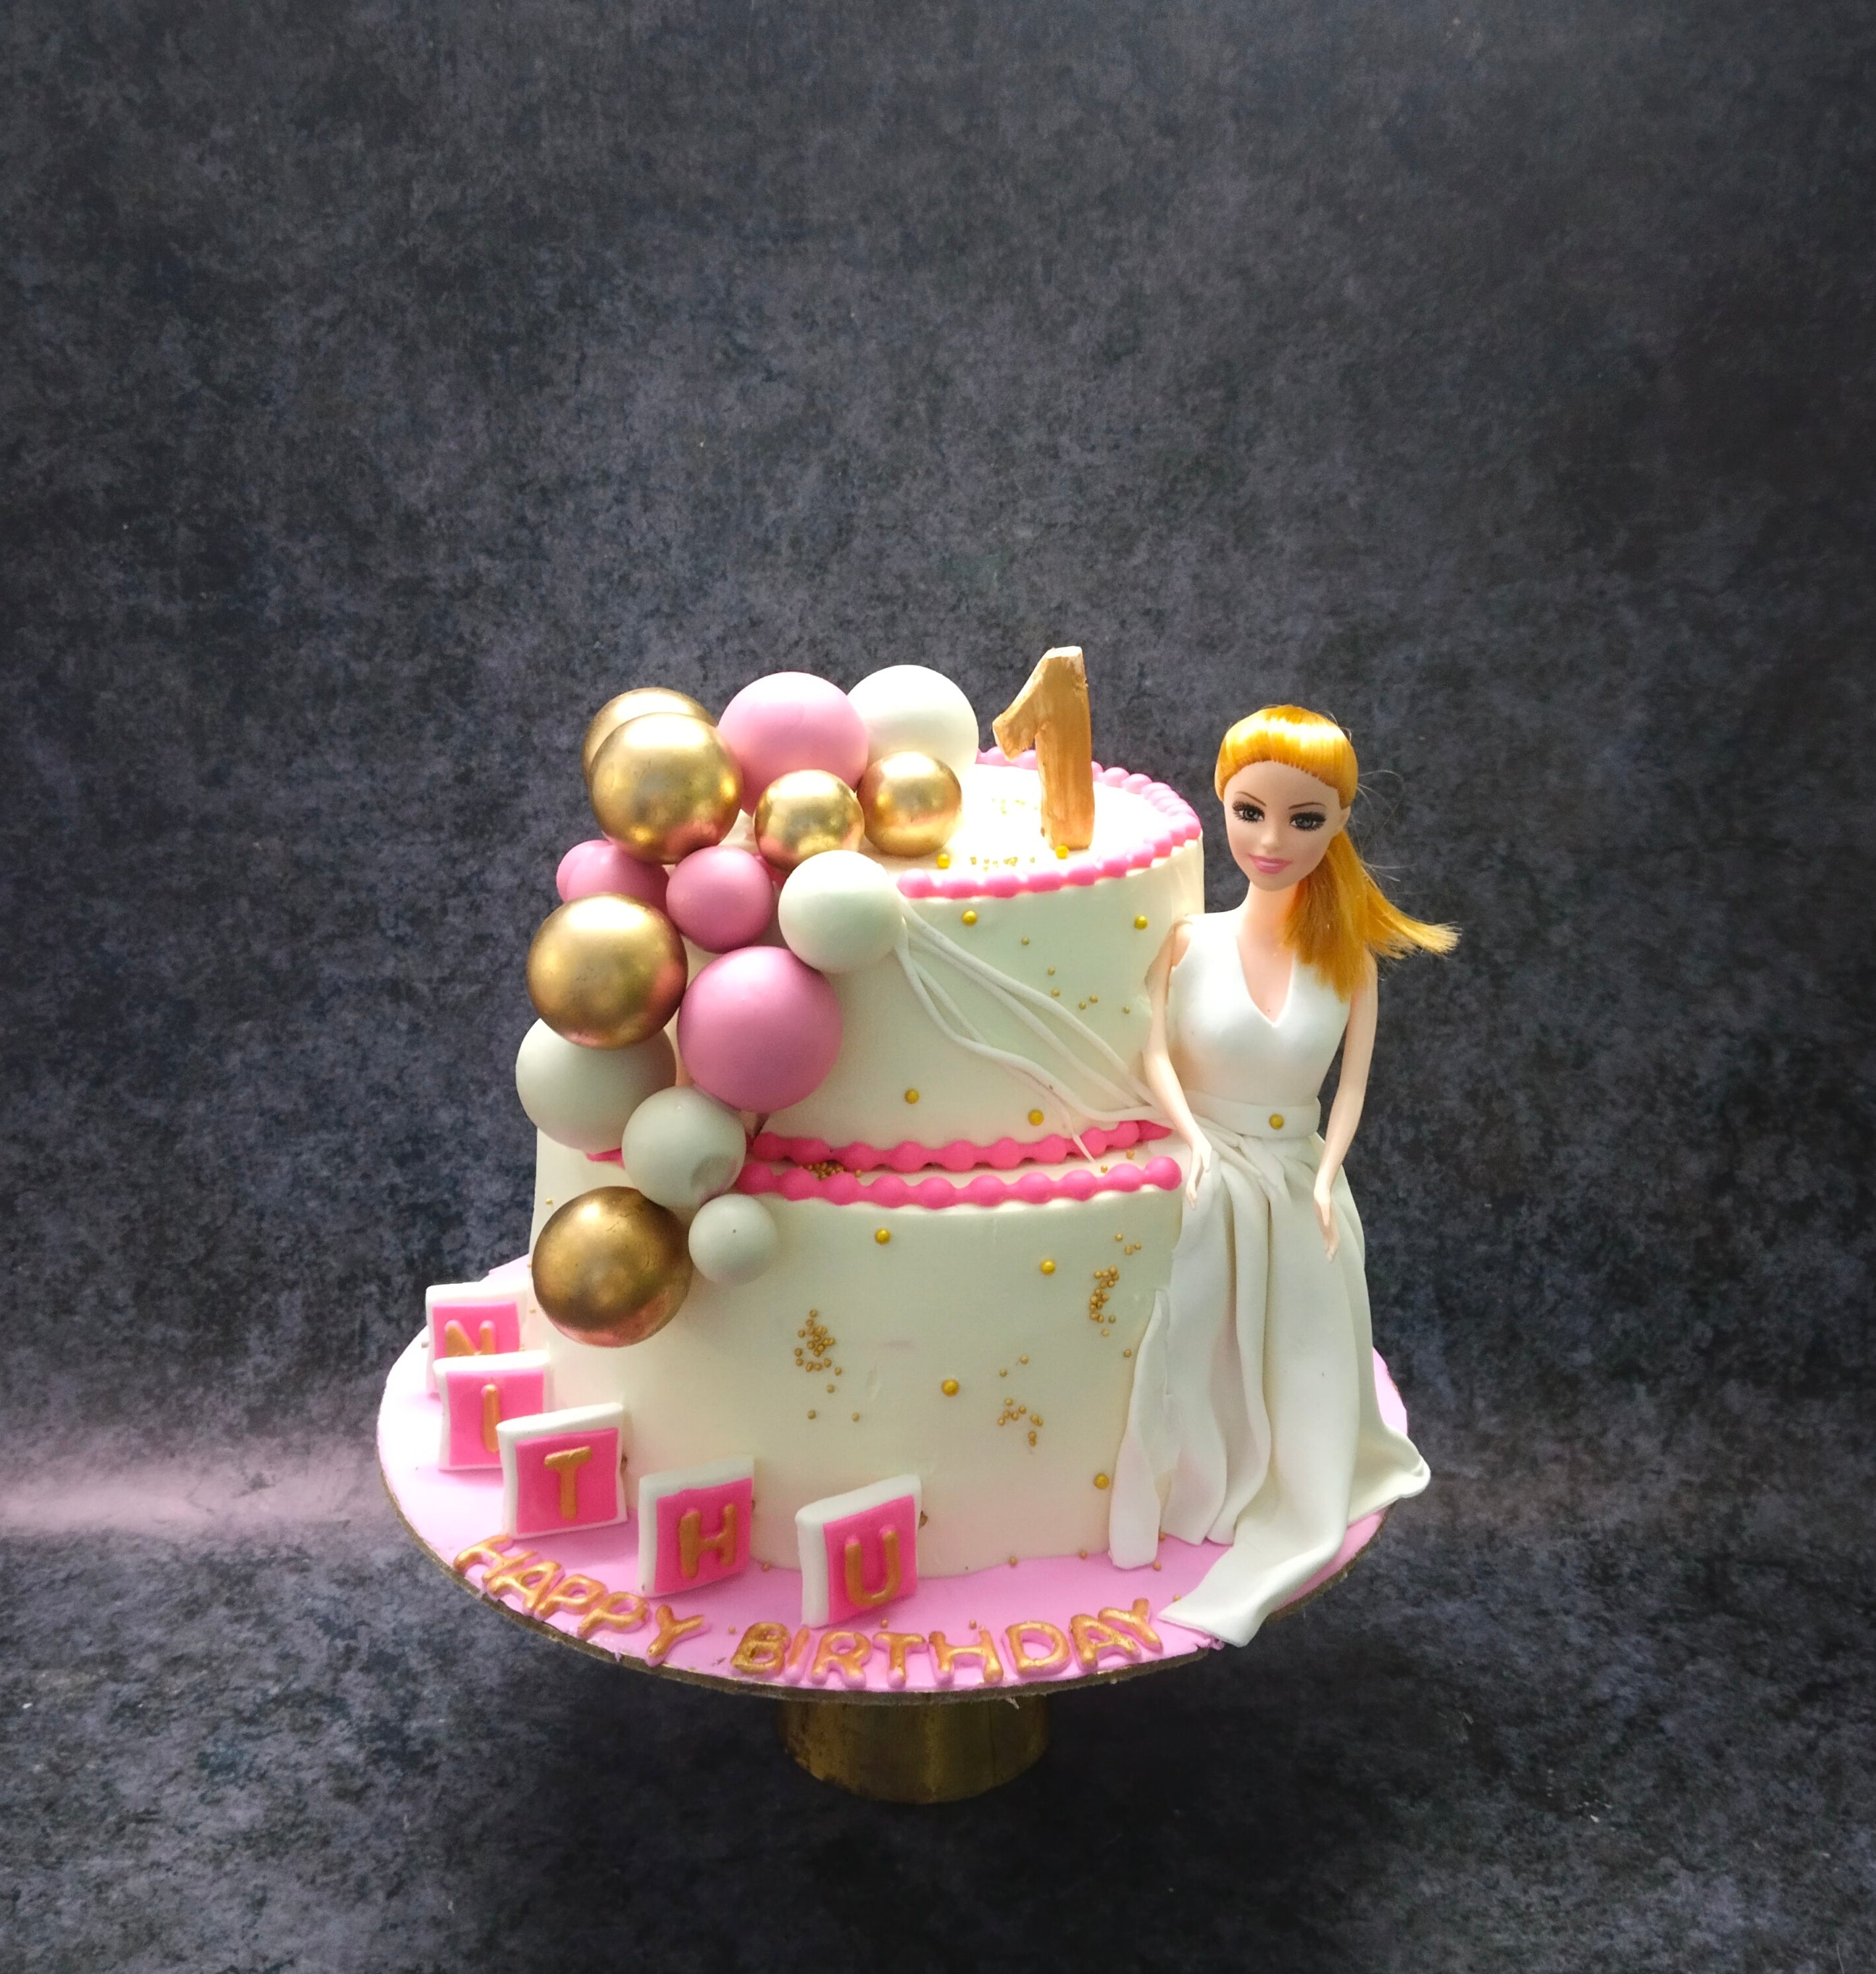 Pretty Princess Two~Tier Cake | Princess Birthday Cake |The Cake Store